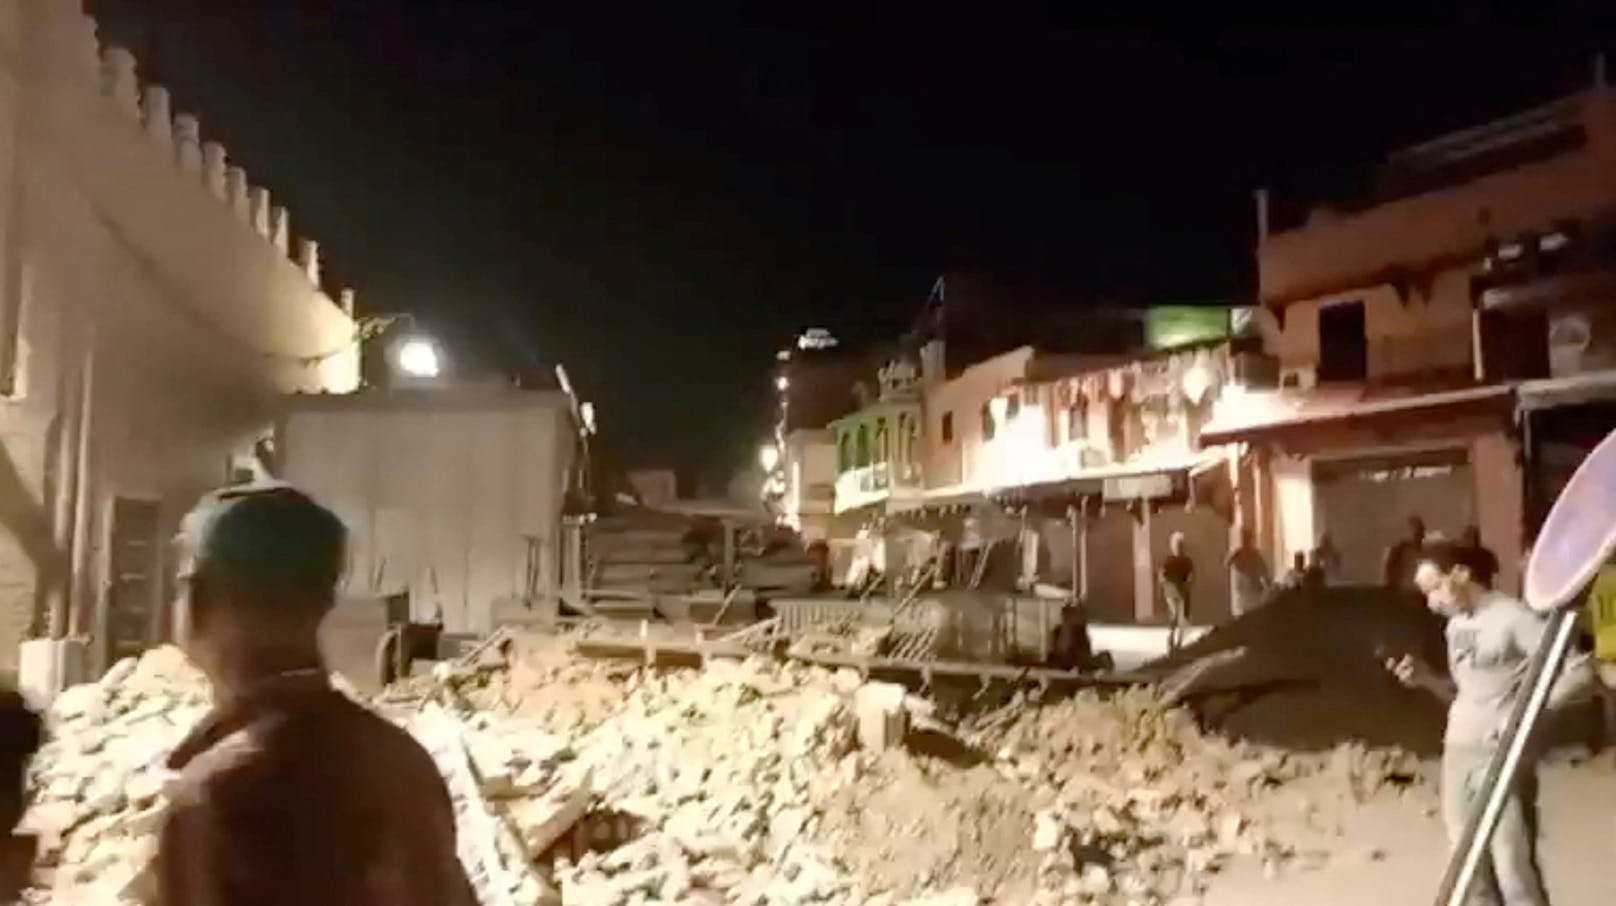 Erdbeben erschüttert Marokko – mehr als 290 Tote